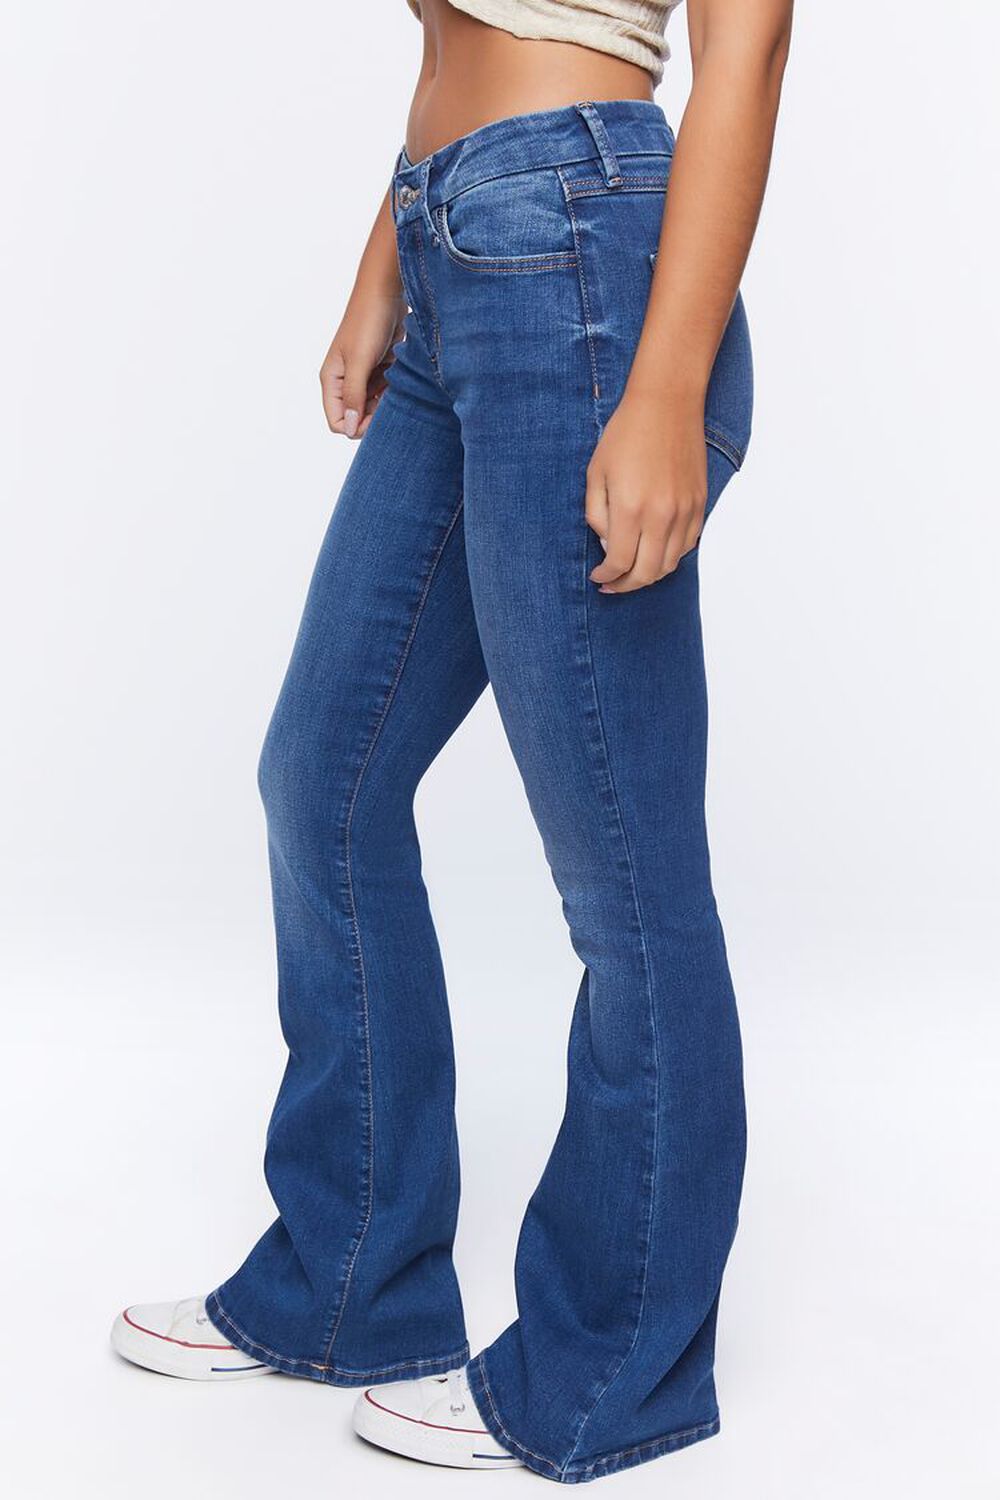 MEDIUM DENIM Curvy Flare Jeans, image 3